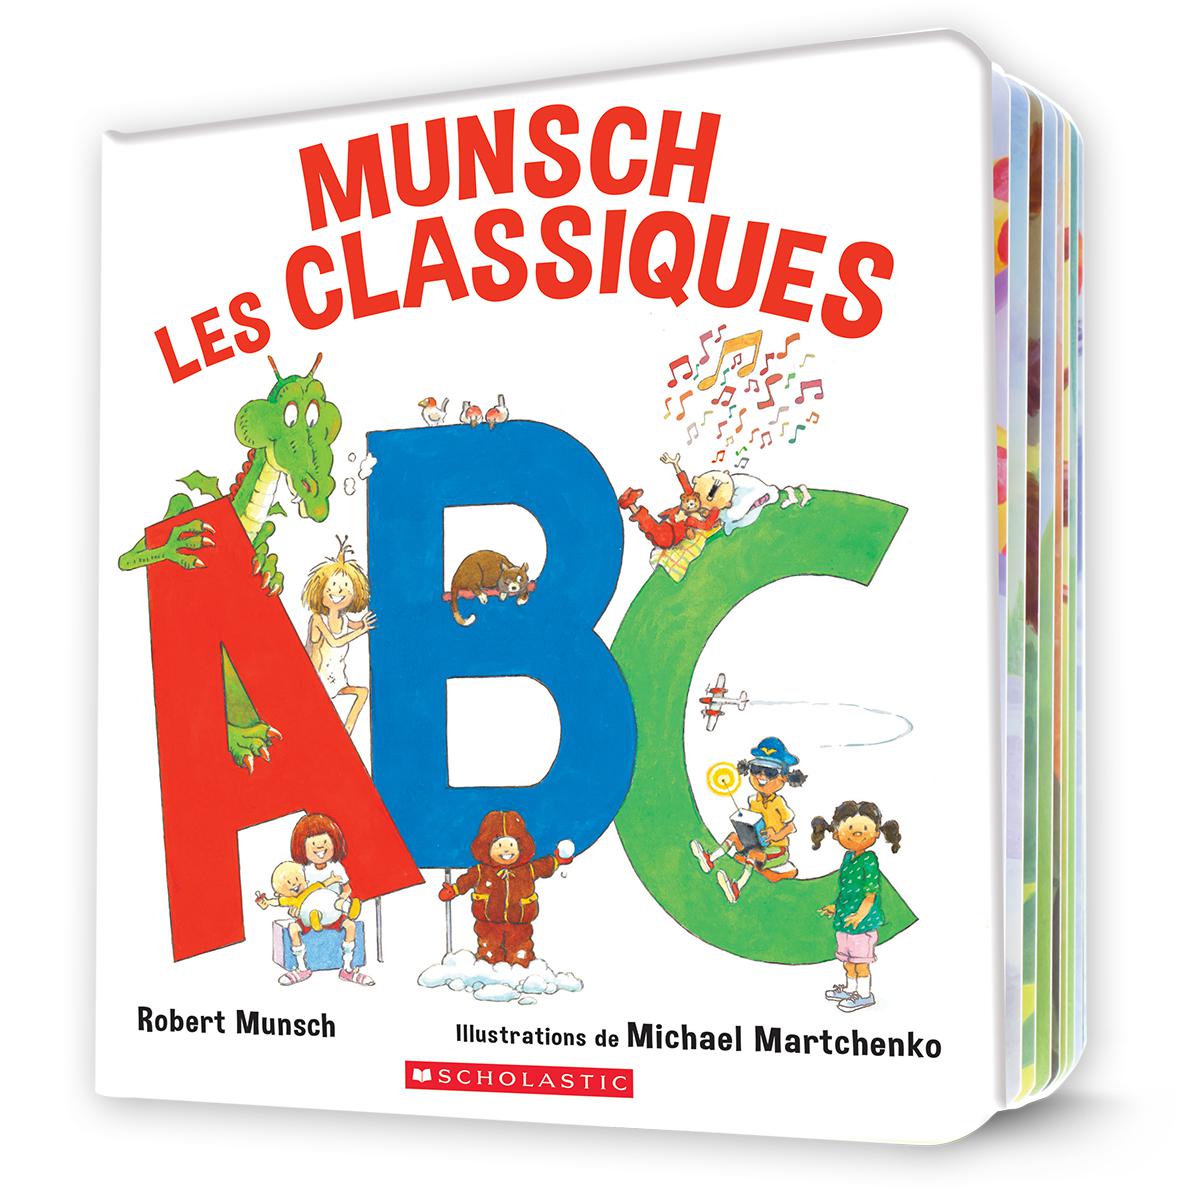  Munsch Les Classiques : ABC 